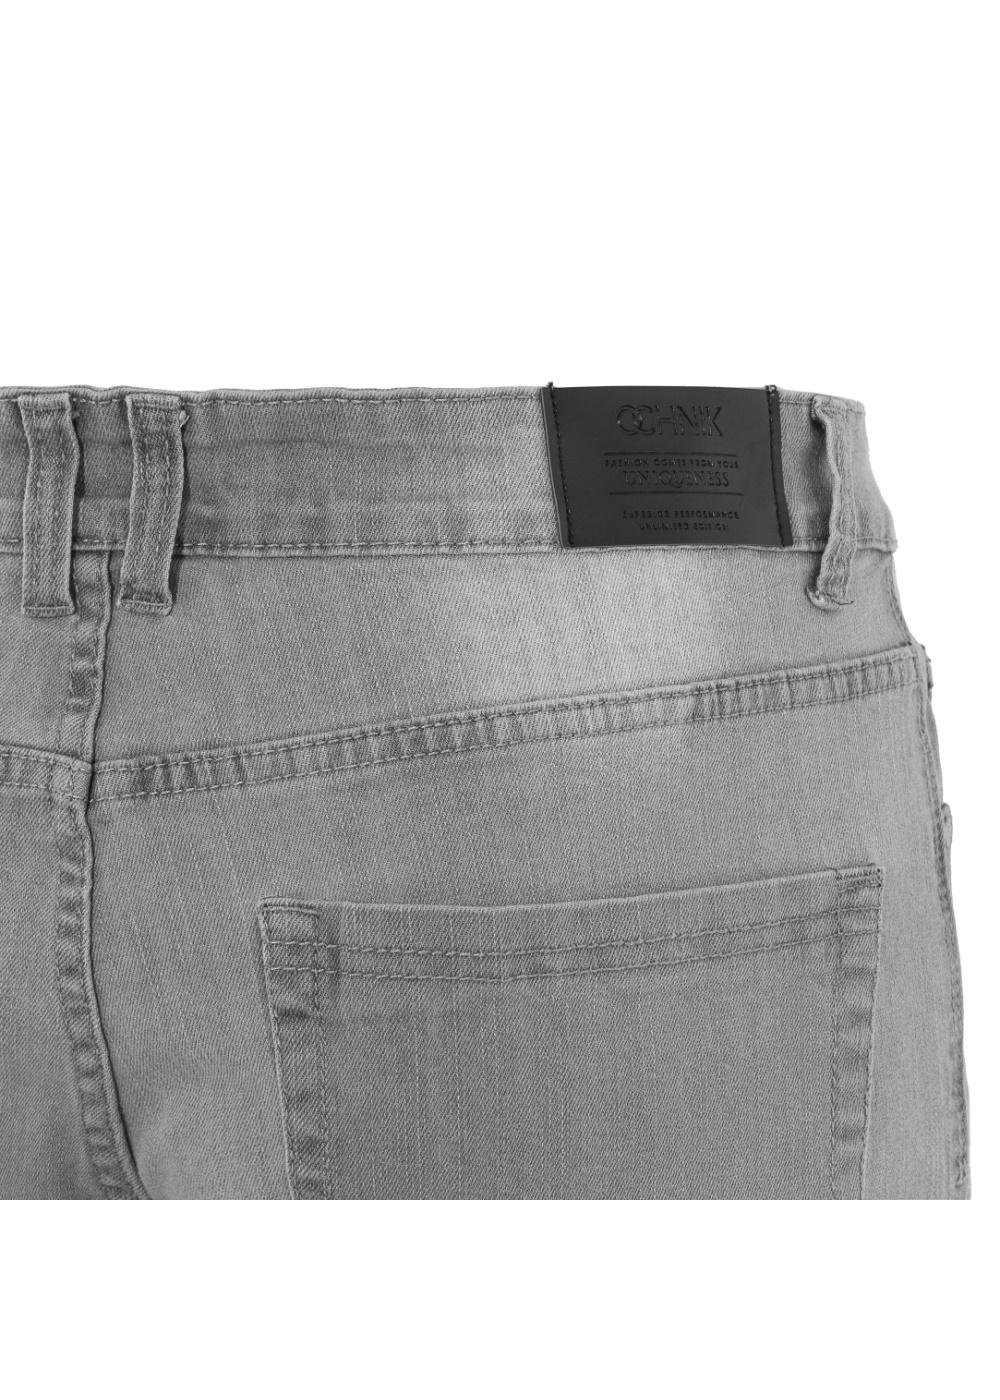 Spodnie męskie JEAMT-0008-91(W20)